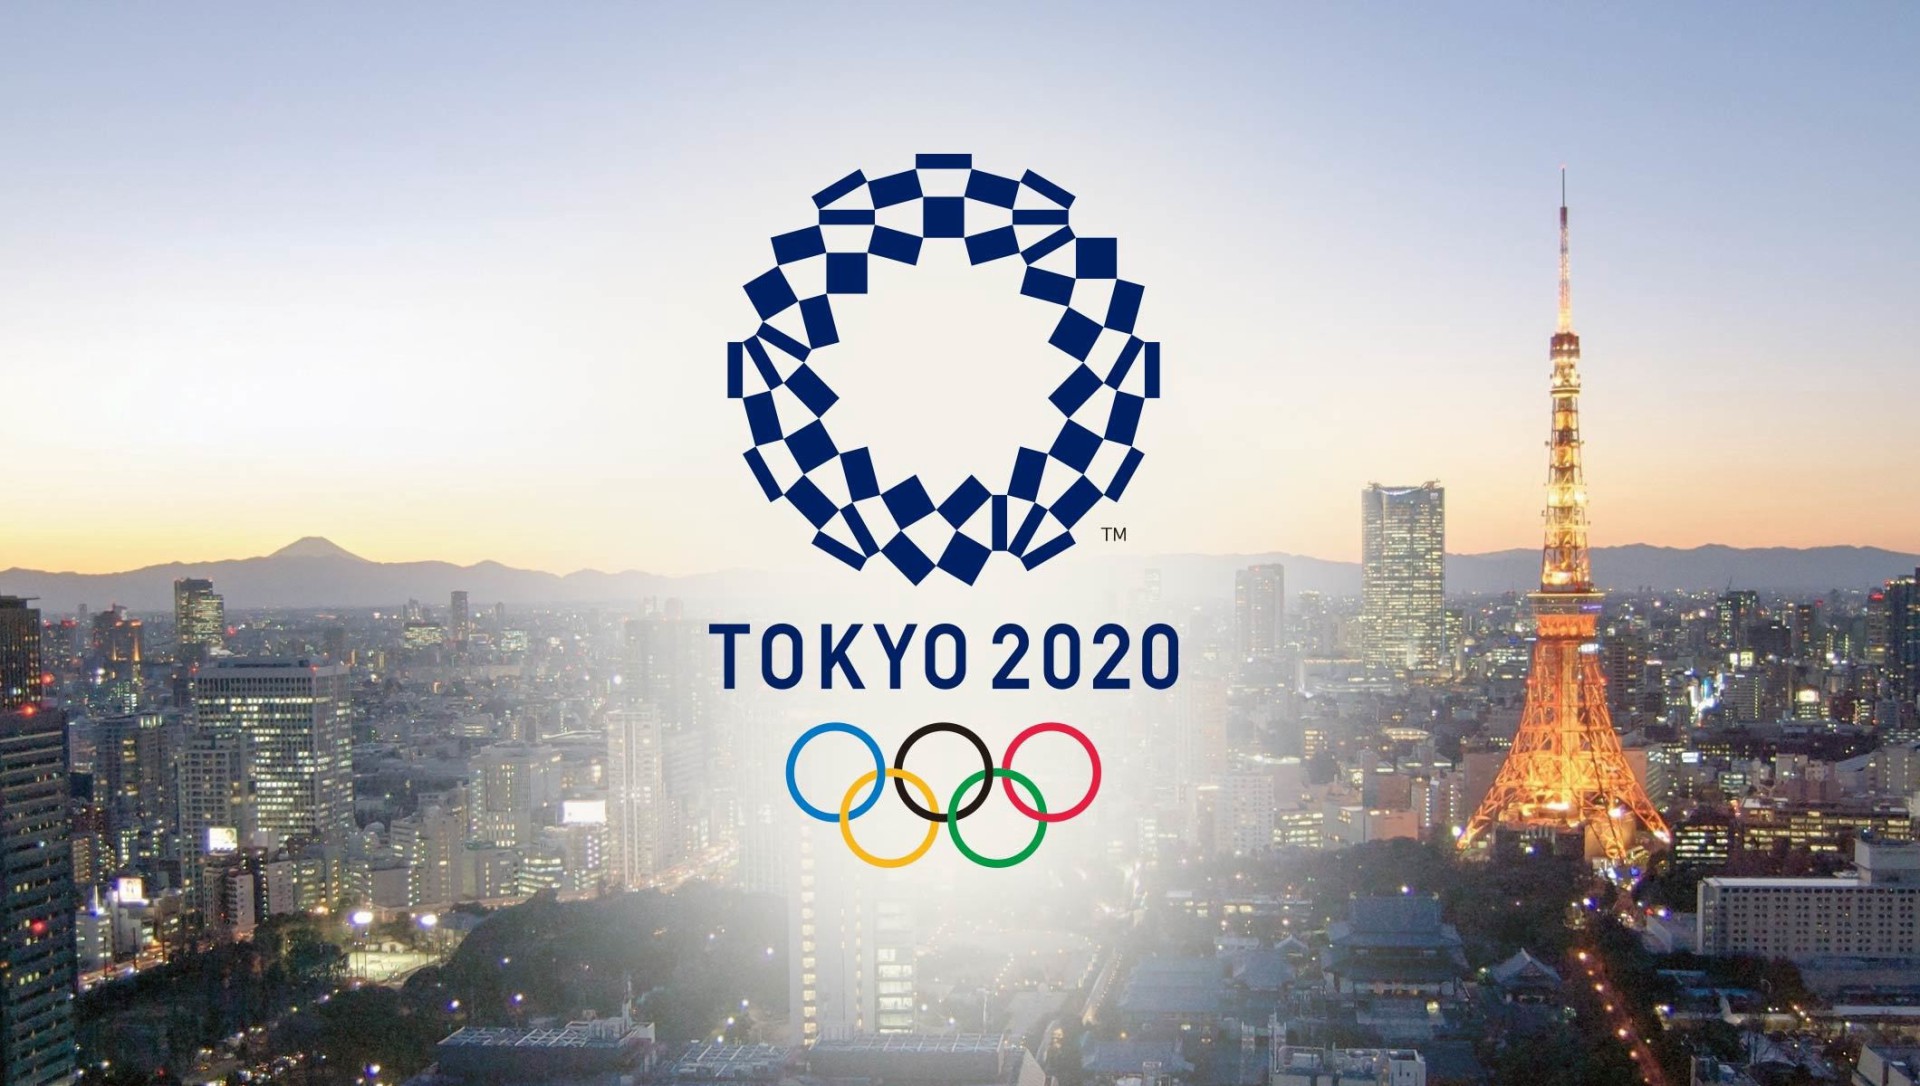 日本将如期举办东京奥运会 3月26日举行圣火传递